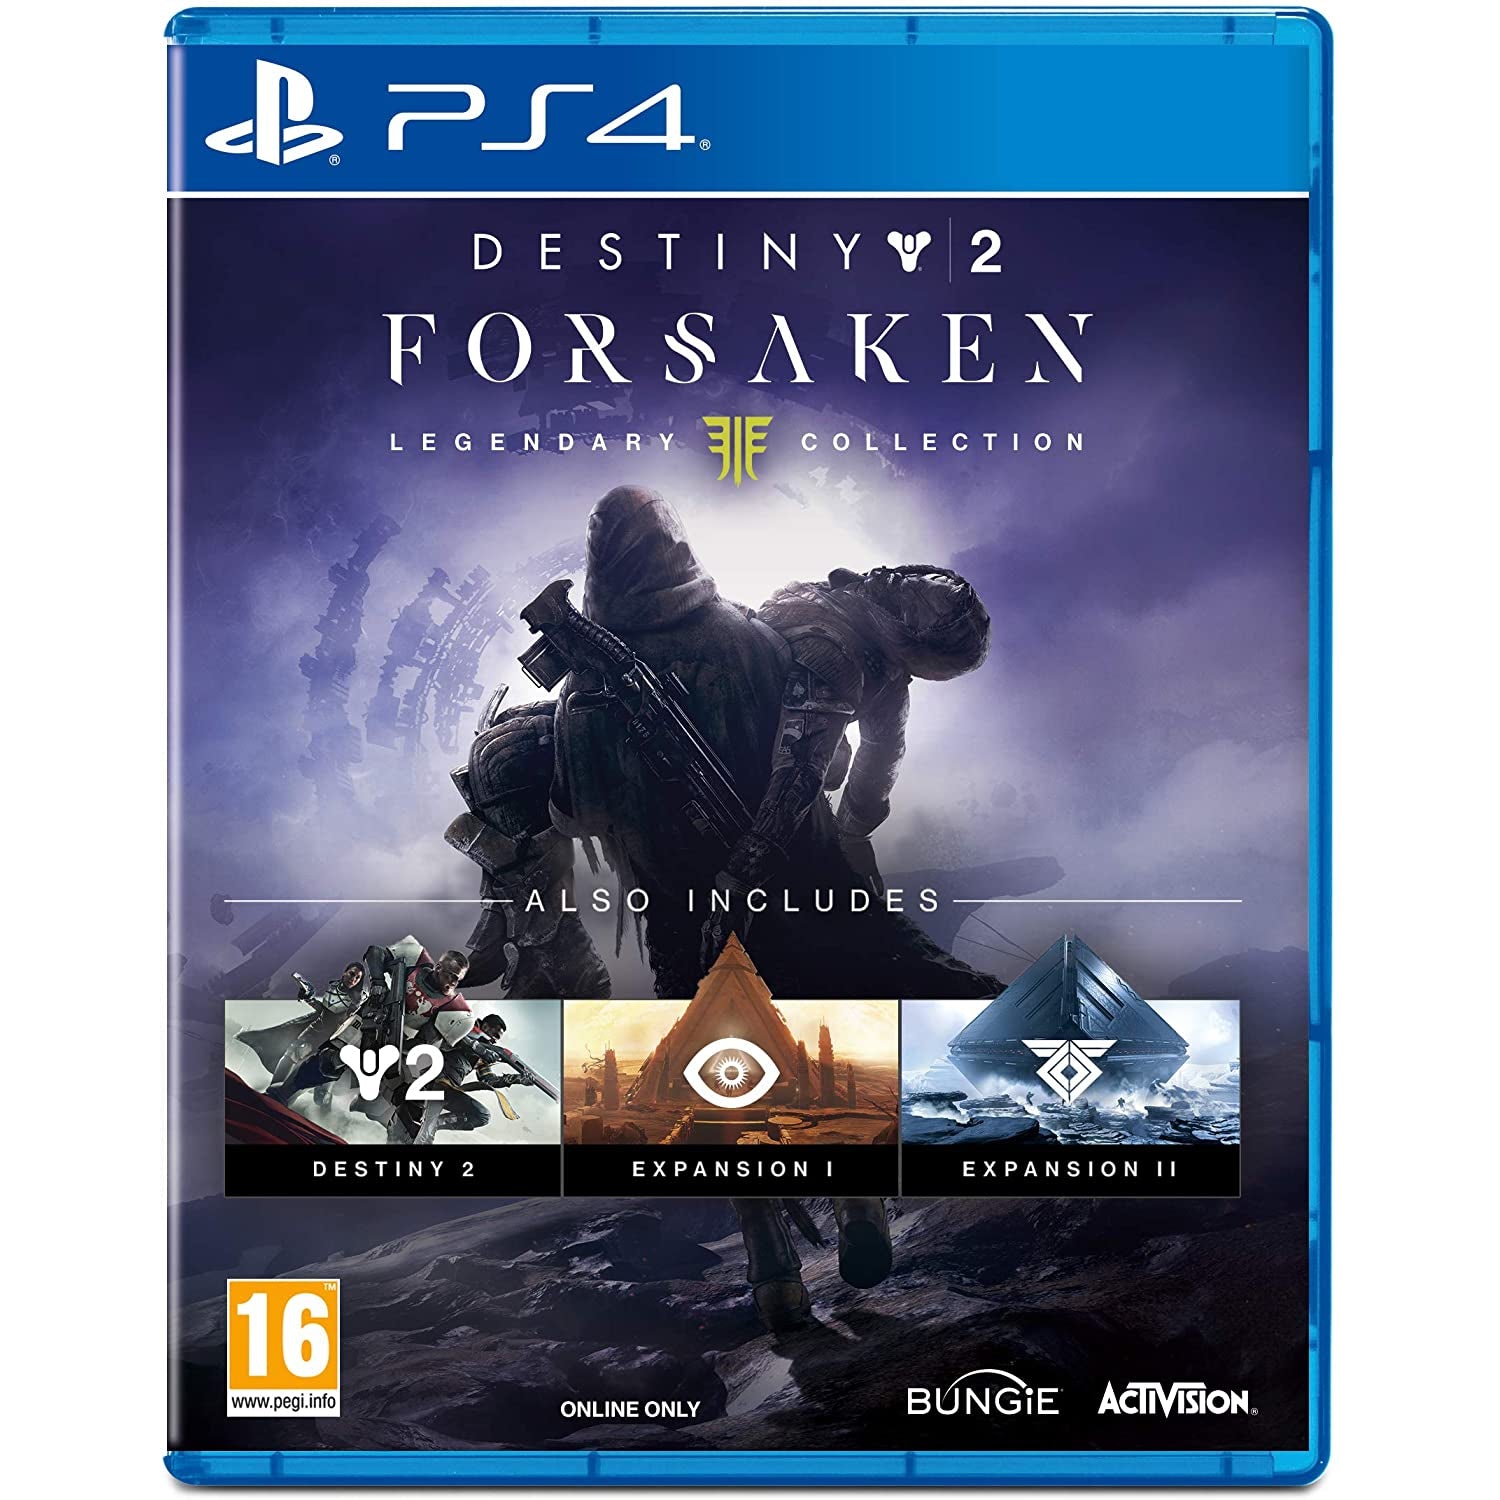 Destiny 2 Forsaken - Legendary Collection For Playstation 4